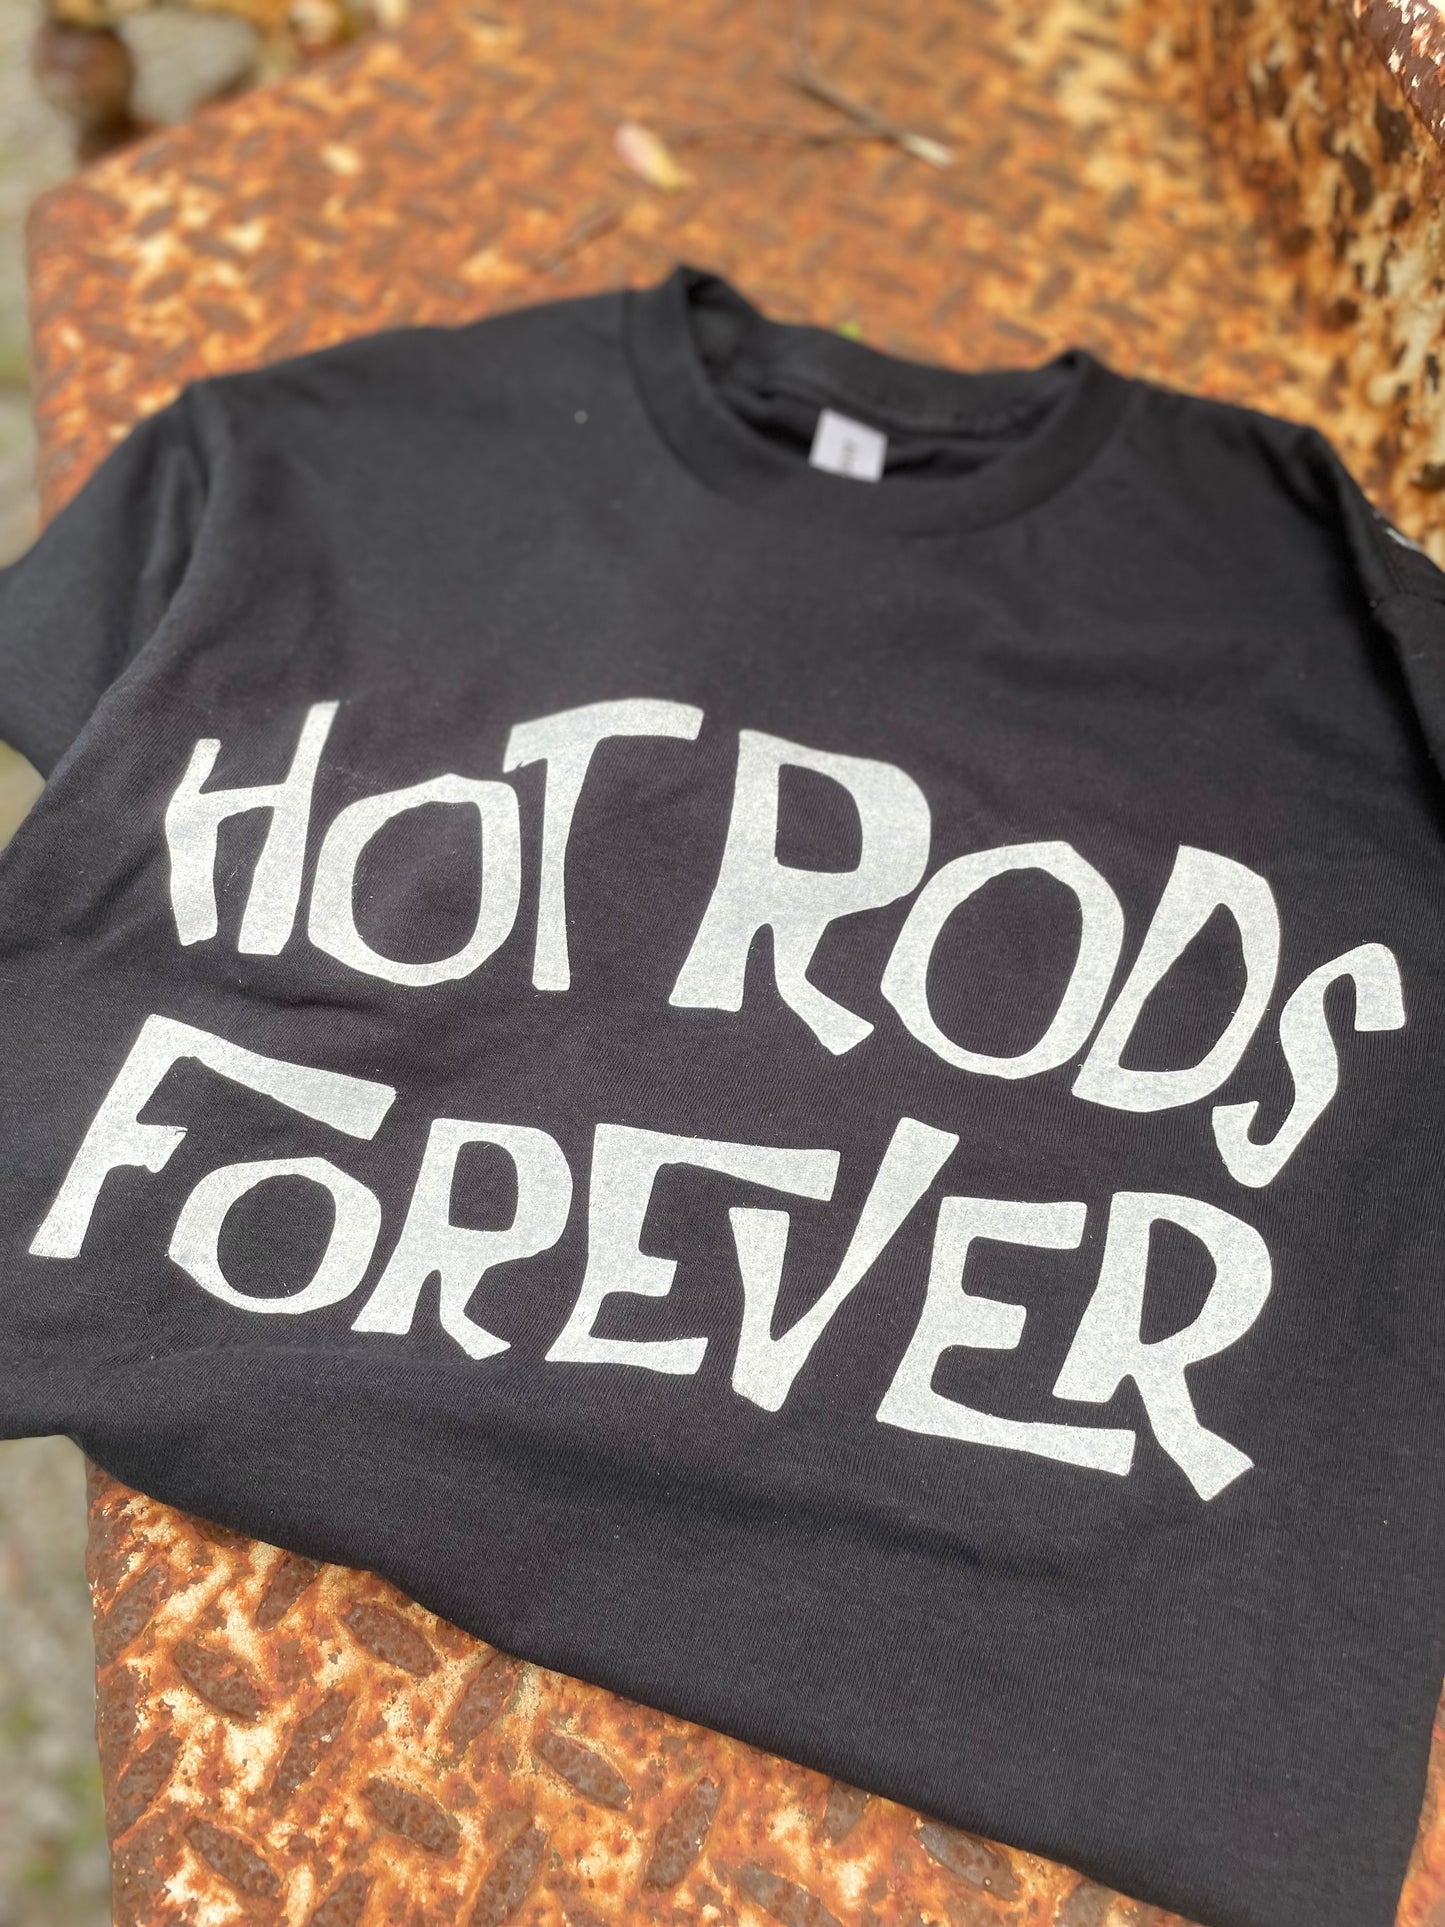 Hot Rods Forever Shirt - Black